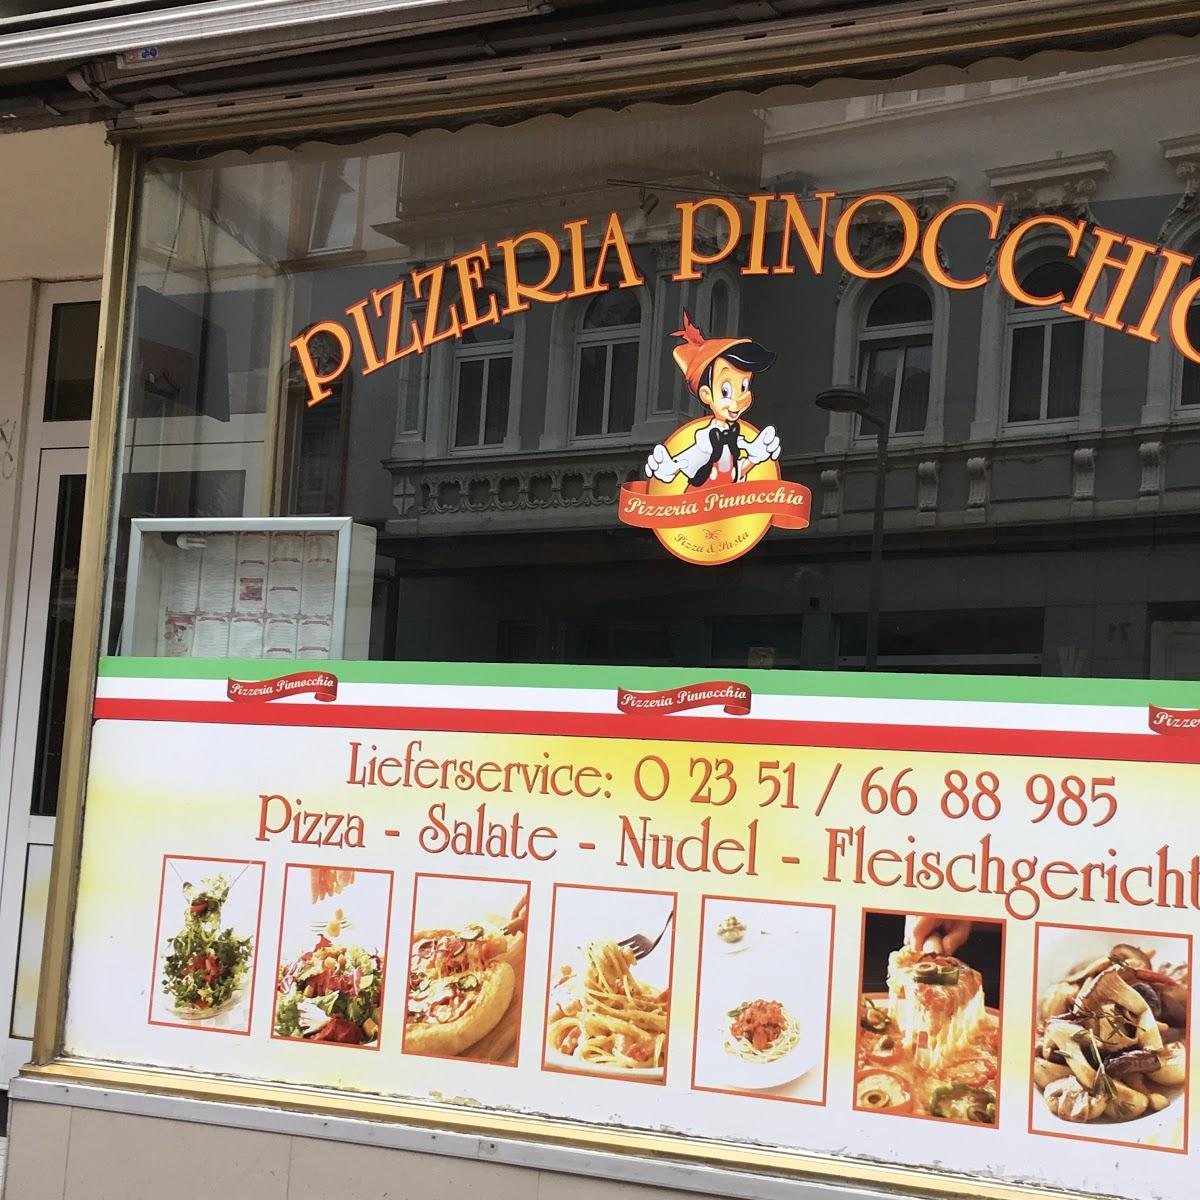 Restaurant "Pizzeria Pinocchio" in Lüdenscheid